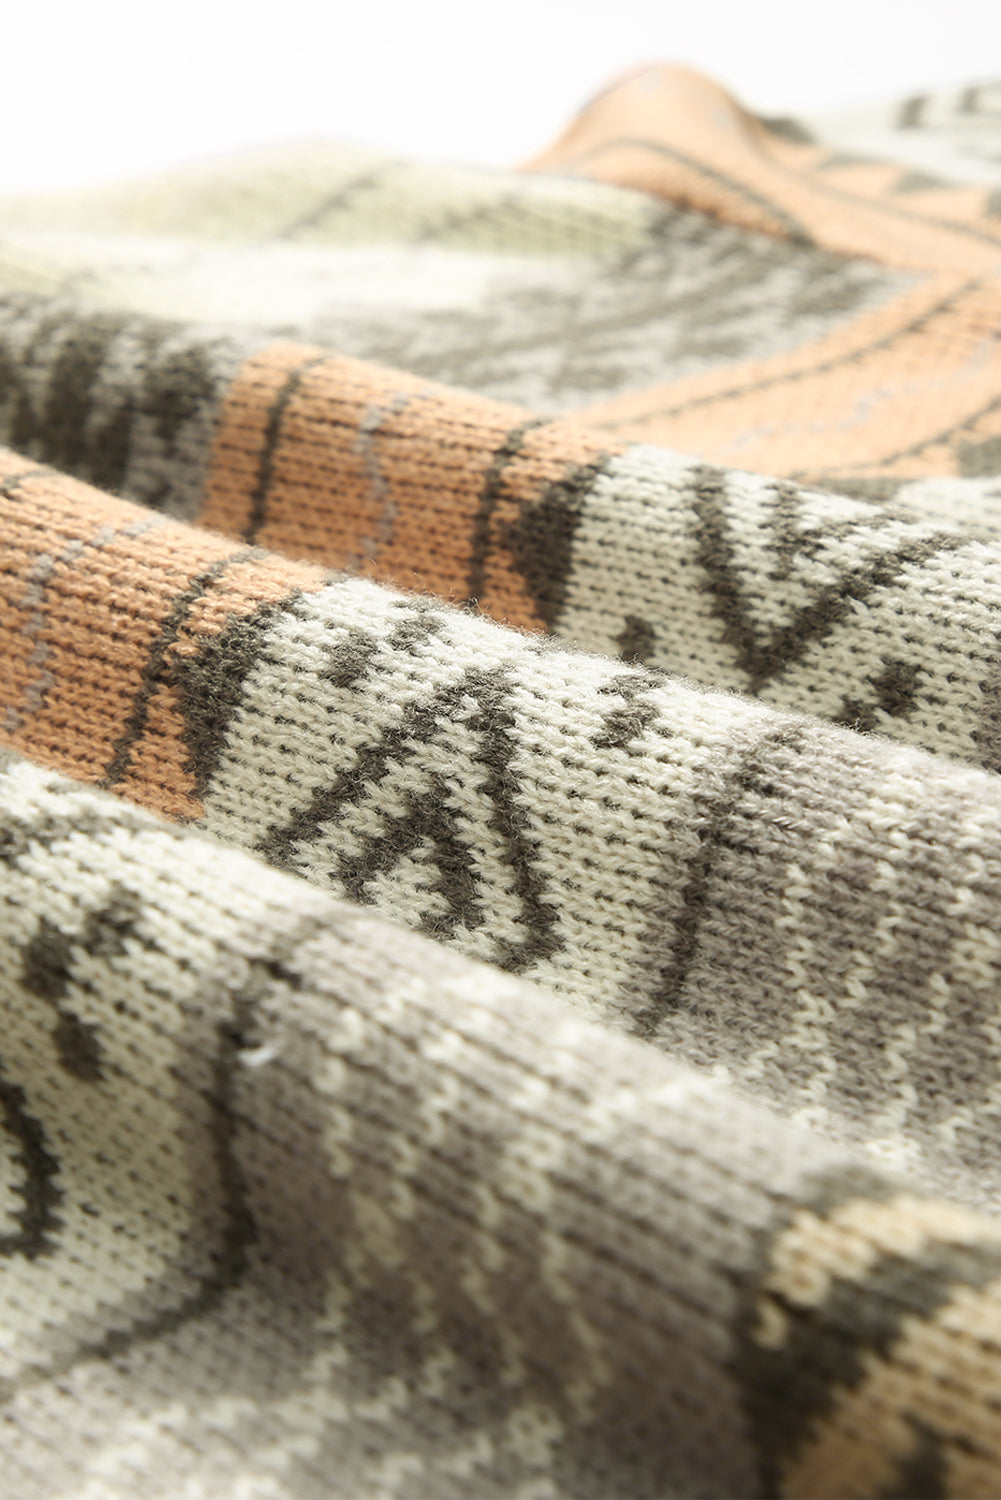 Rebrasti pleteni pulover z v-izrezom v kaki barvi z geometrijskim vzorcem